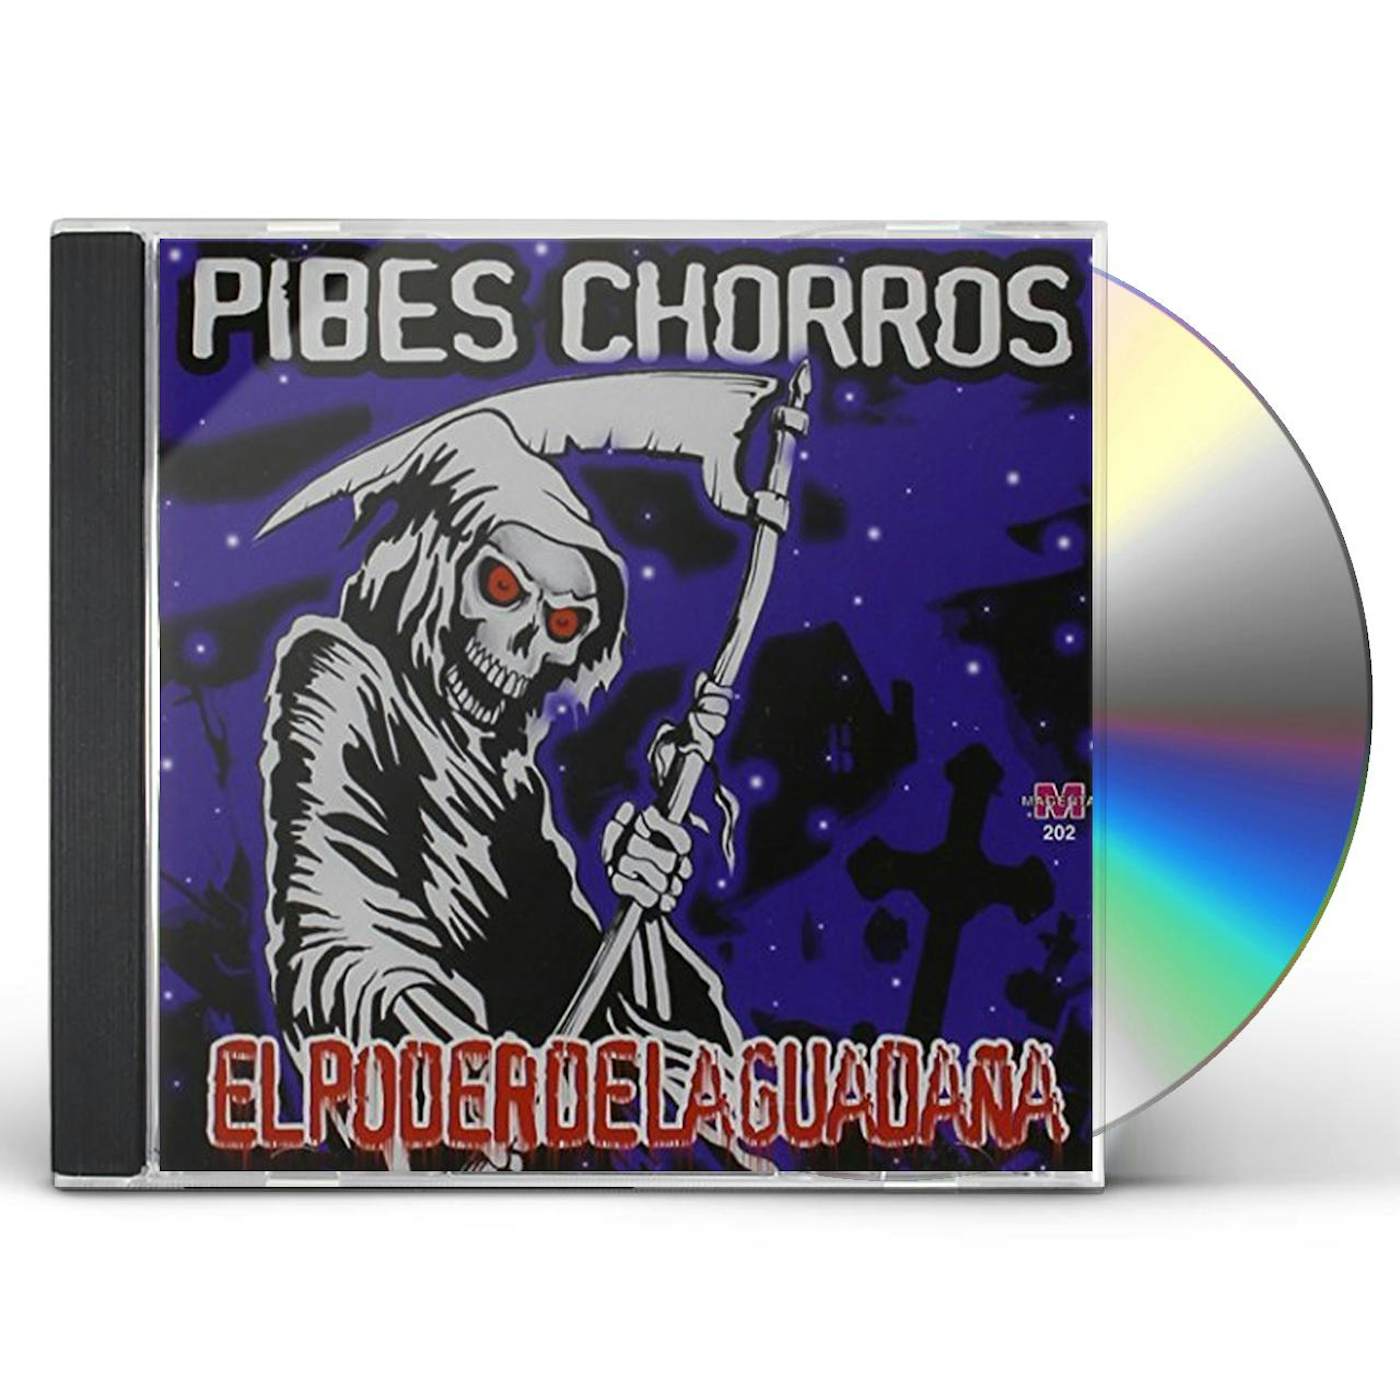 criando cuervos cd - Pibes Chorros